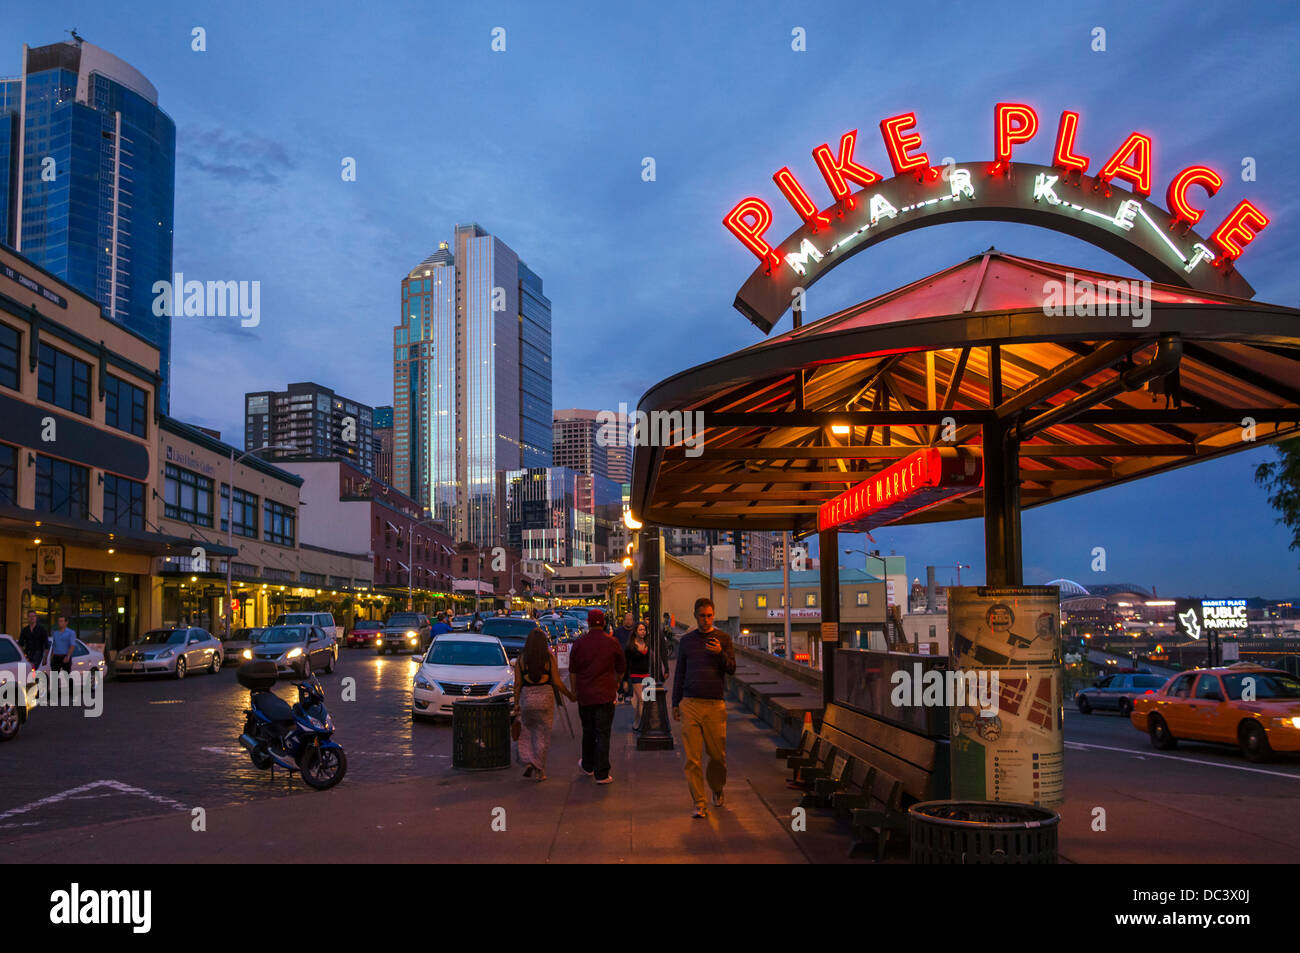 Il Mercato di Pike Place segno di notte su Western Avenue, Seattle, Washington, Stati Uniti d'America Foto Stock